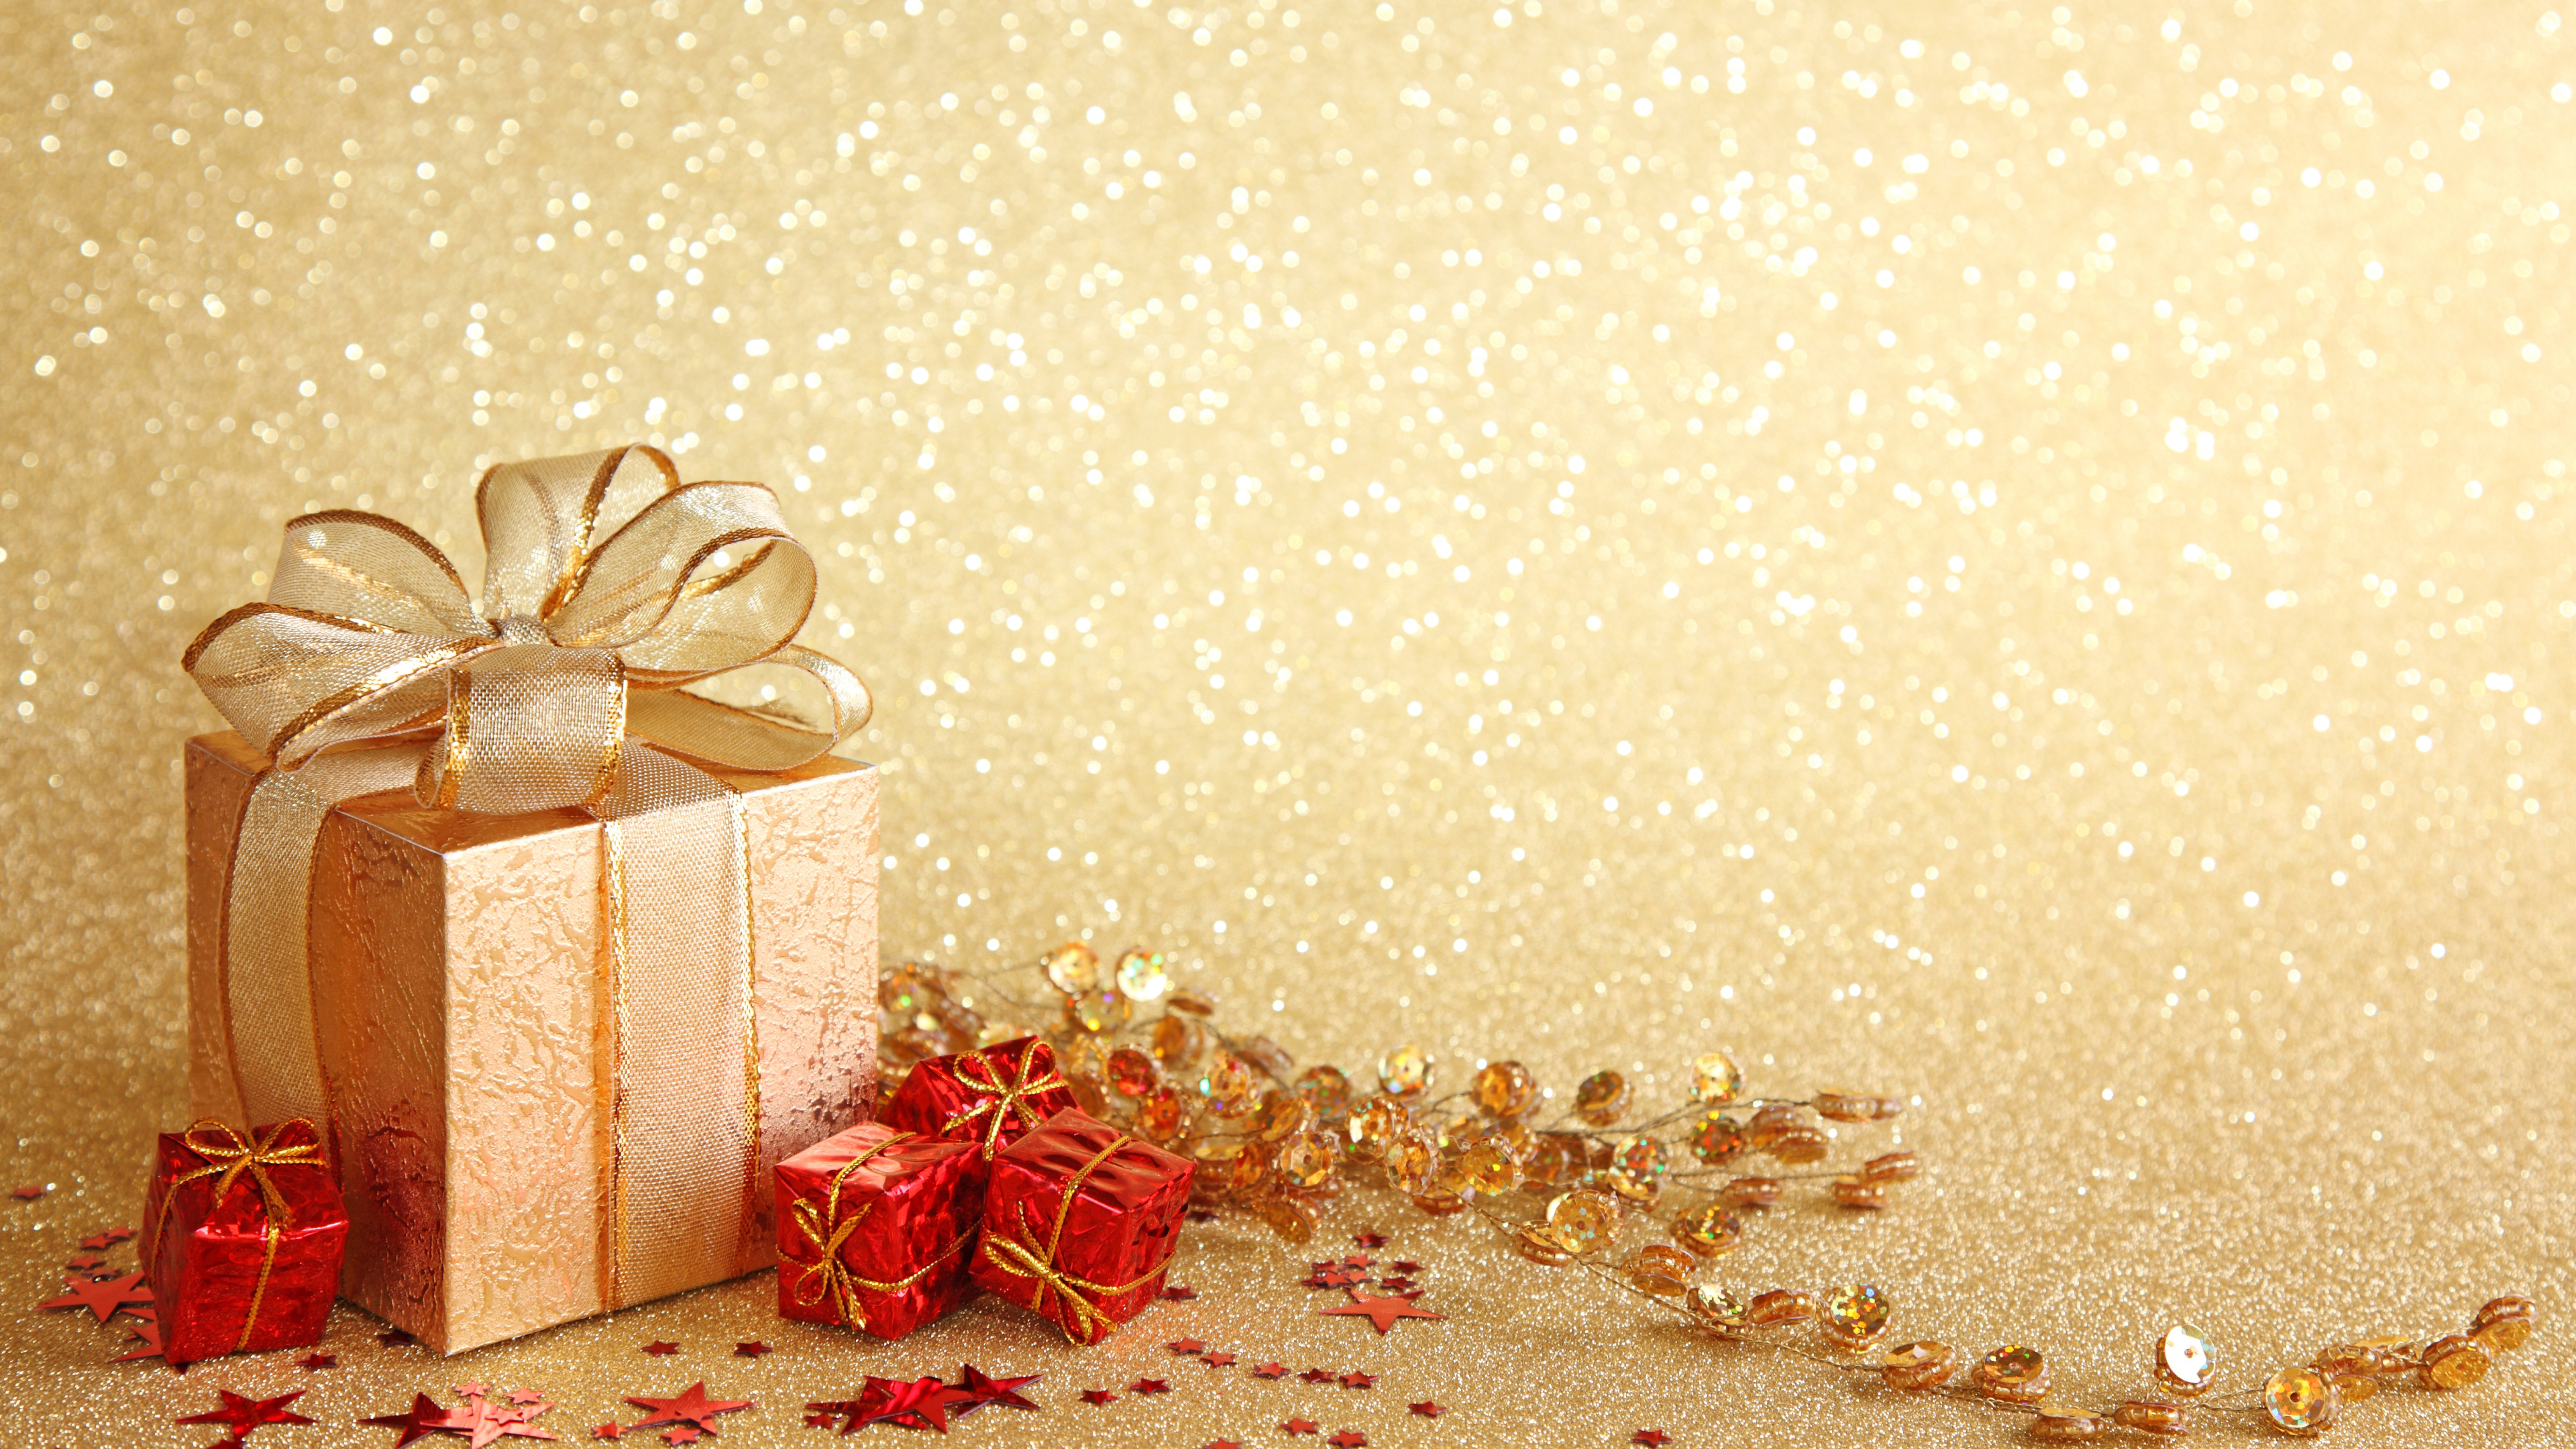 新的一年, 圣诞节那天, 礼品包装, 丝带, 圣诞装饰 壁纸 3840x2160 允许